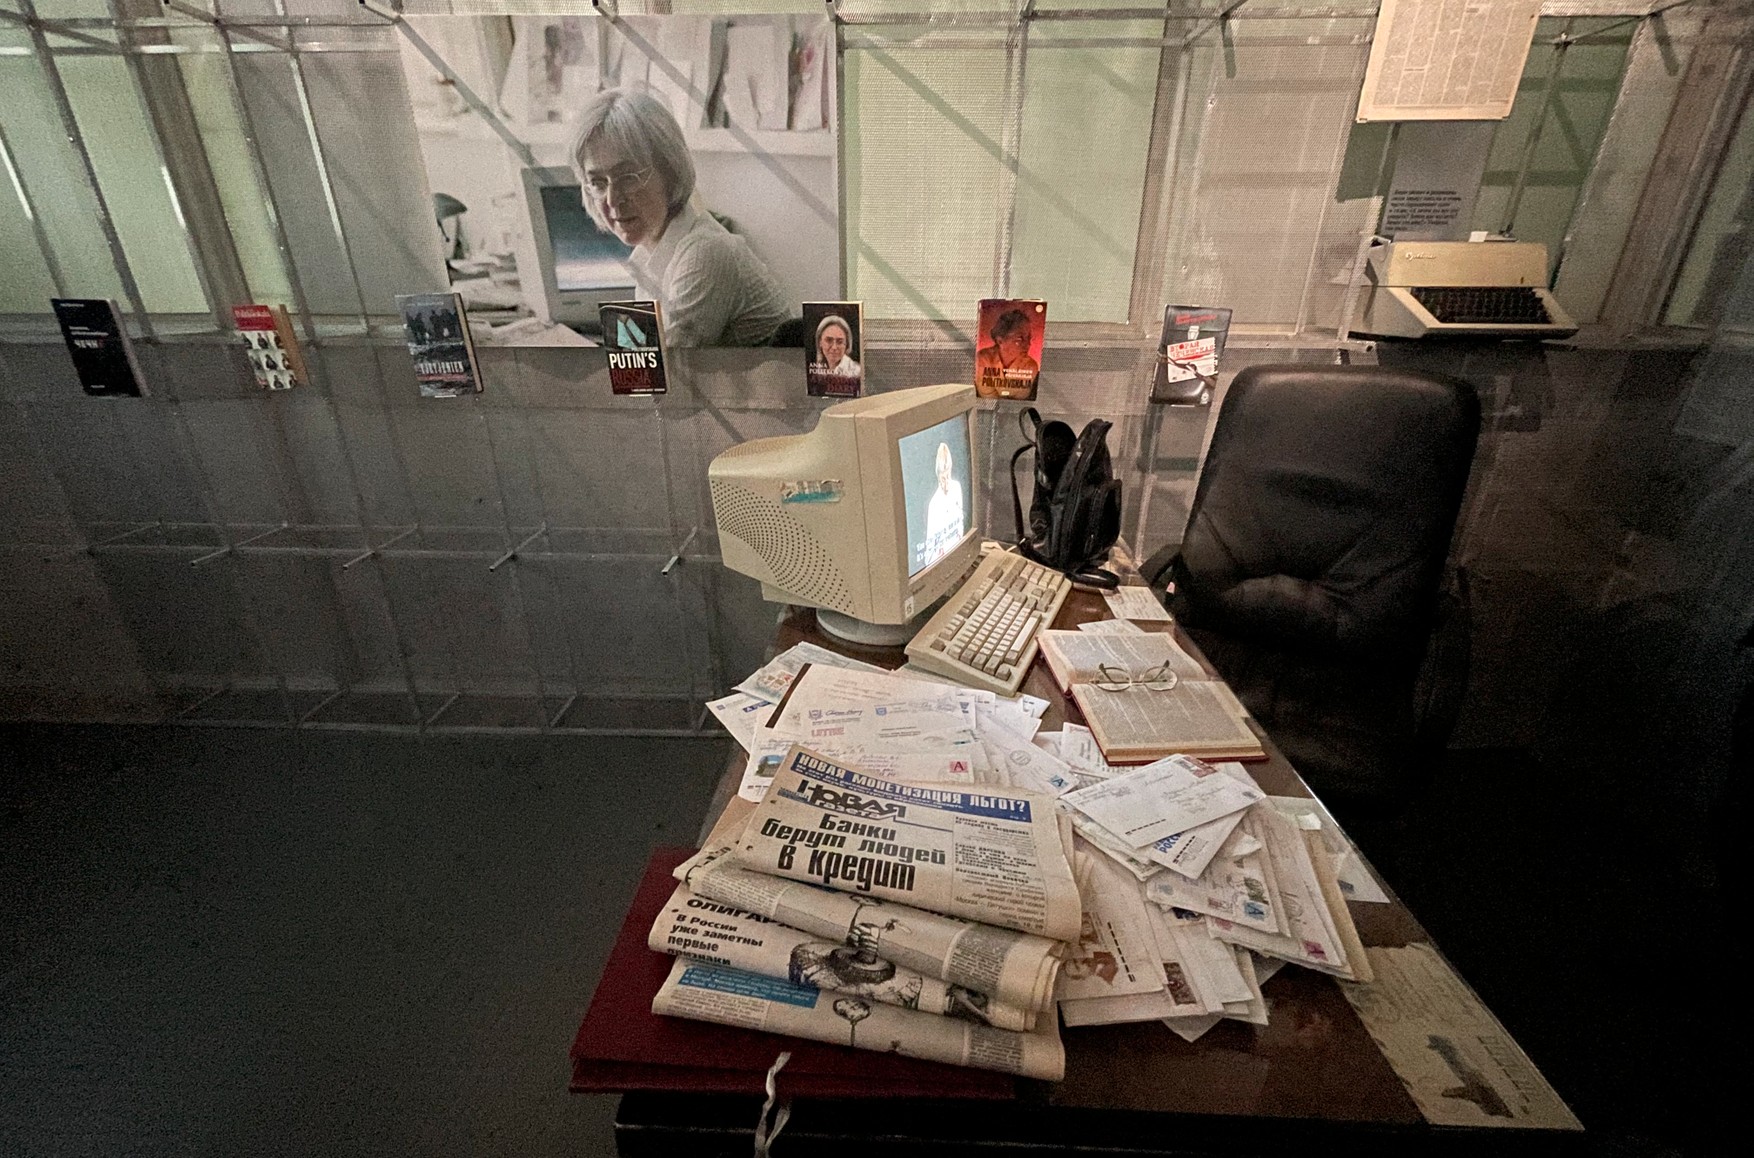 У редакції «Нової газети» відкрили музей Анни Політковської. Його відкриття приурочили до 15-річчя від дня вбивства журналістки